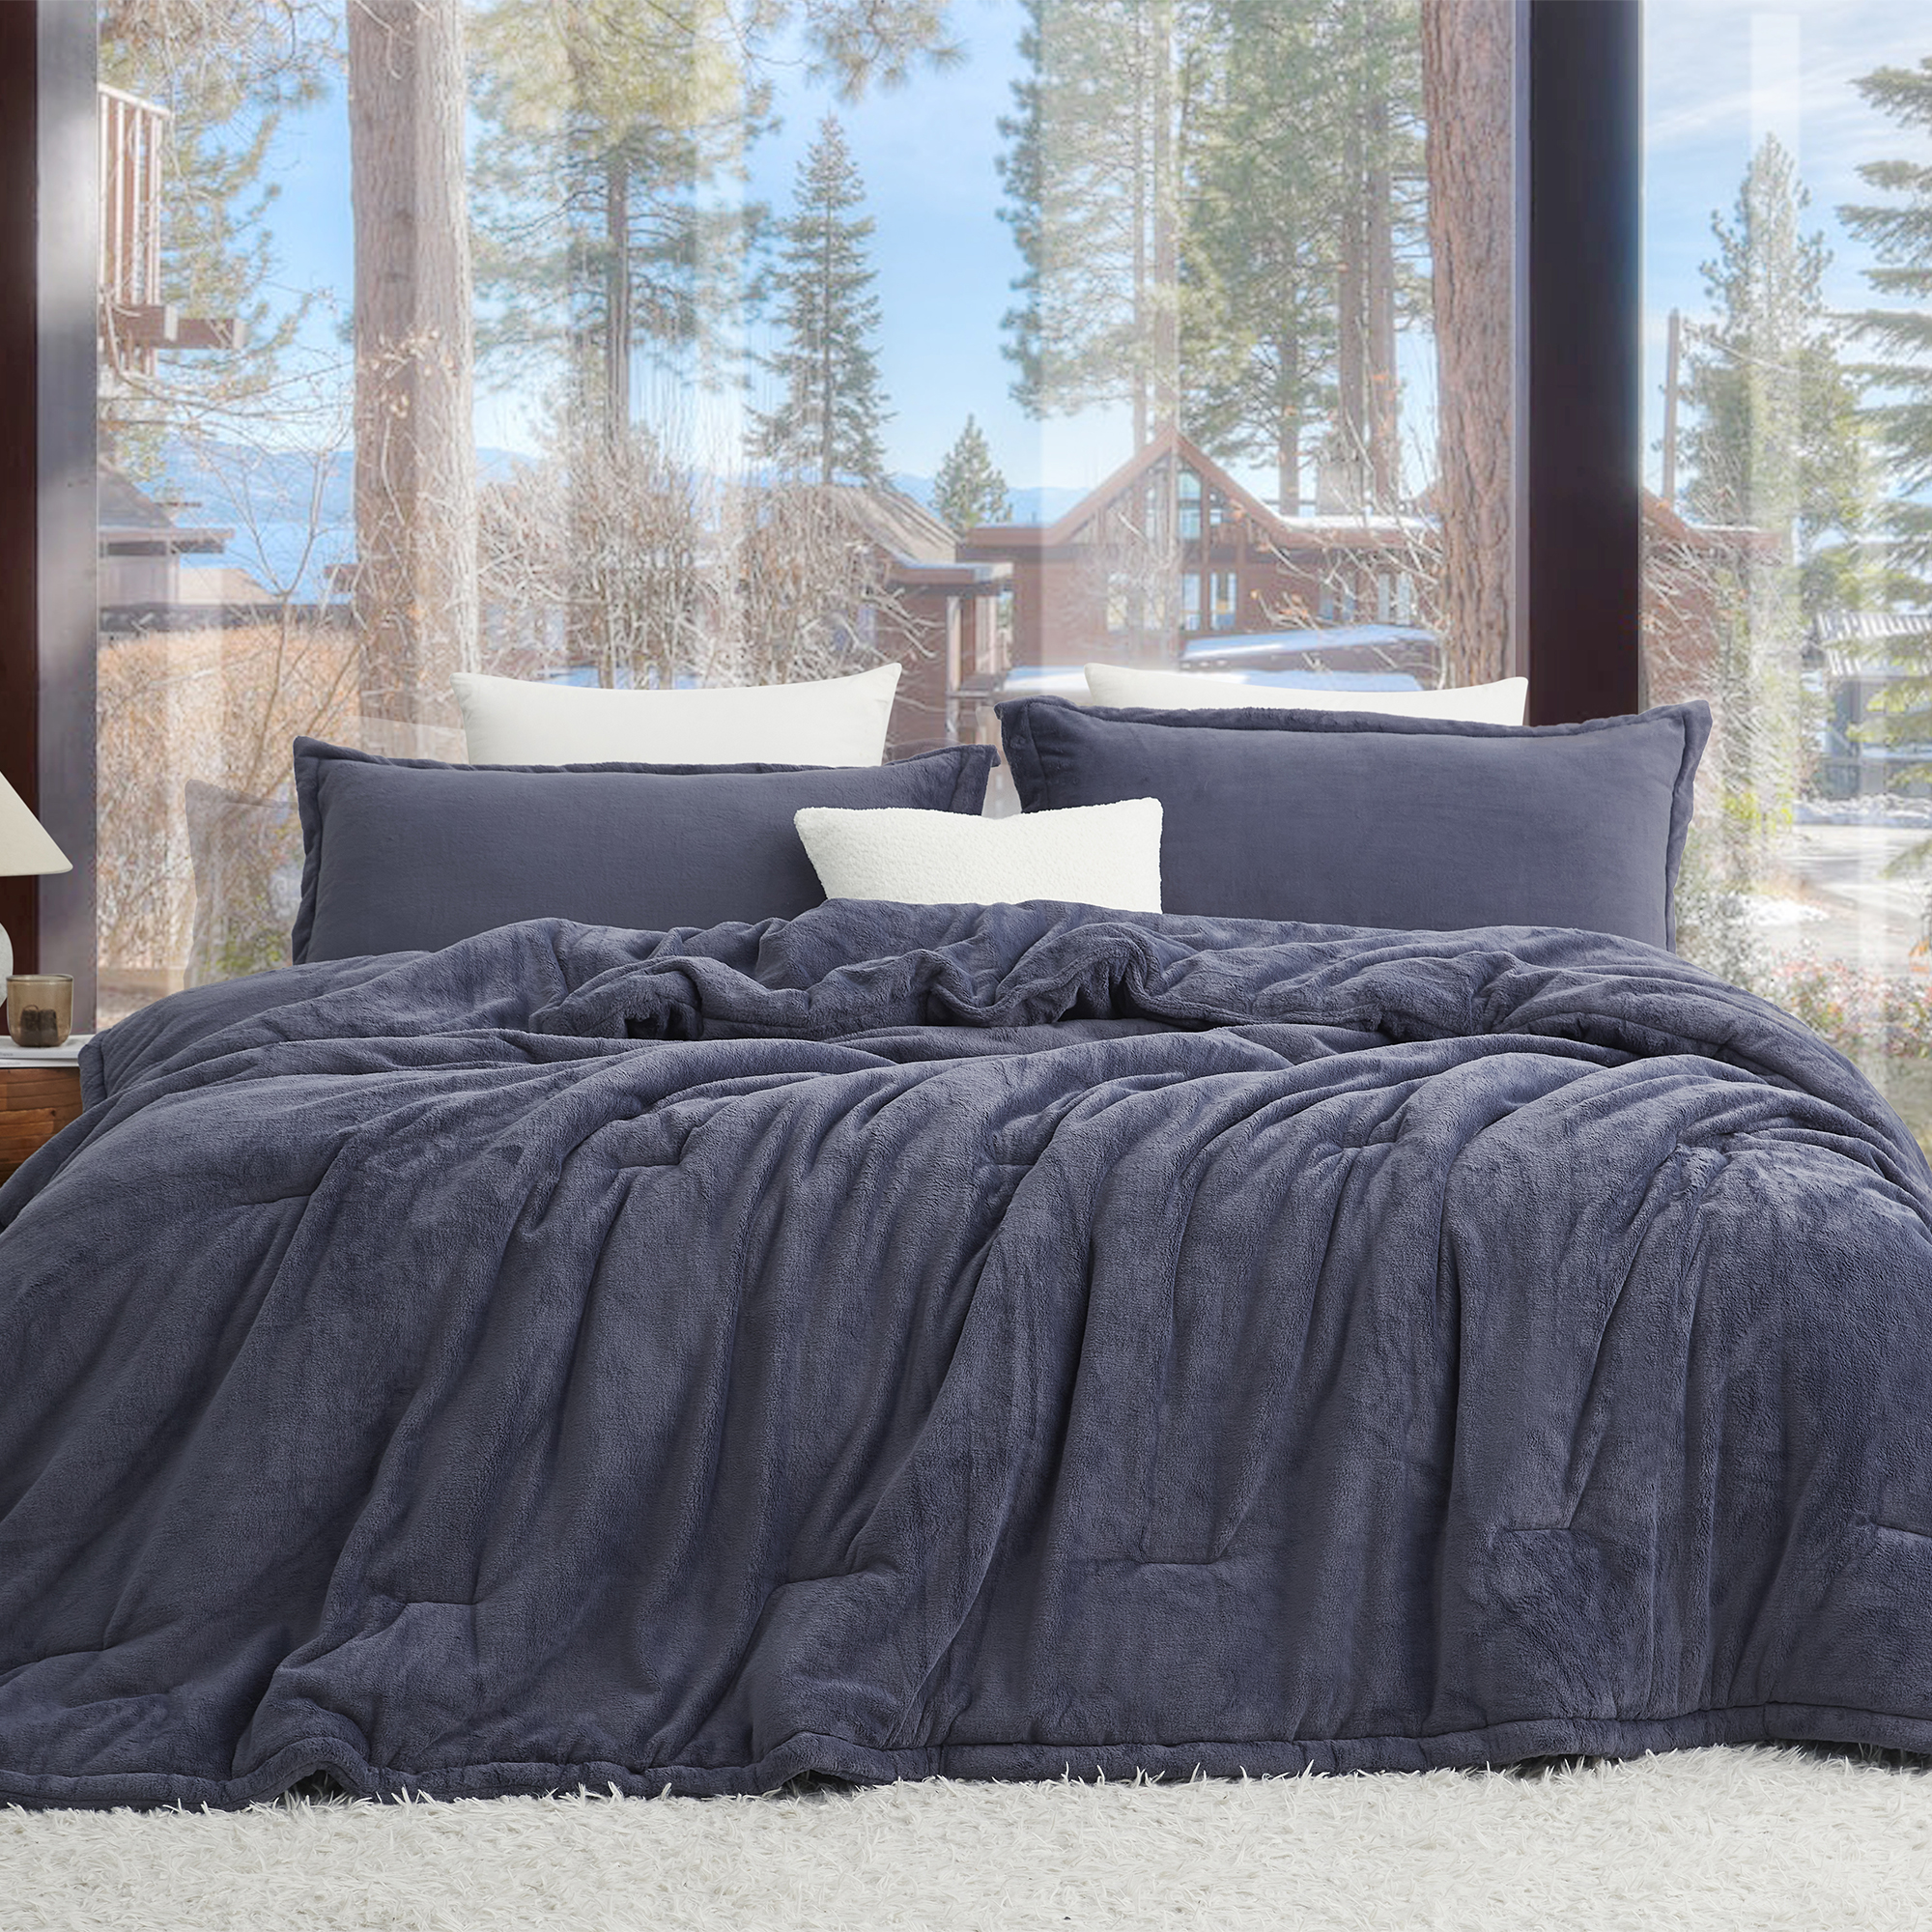 Softer than Soft - Coma Inducer® Oversized King Comforter - Double Plush Indigo Black